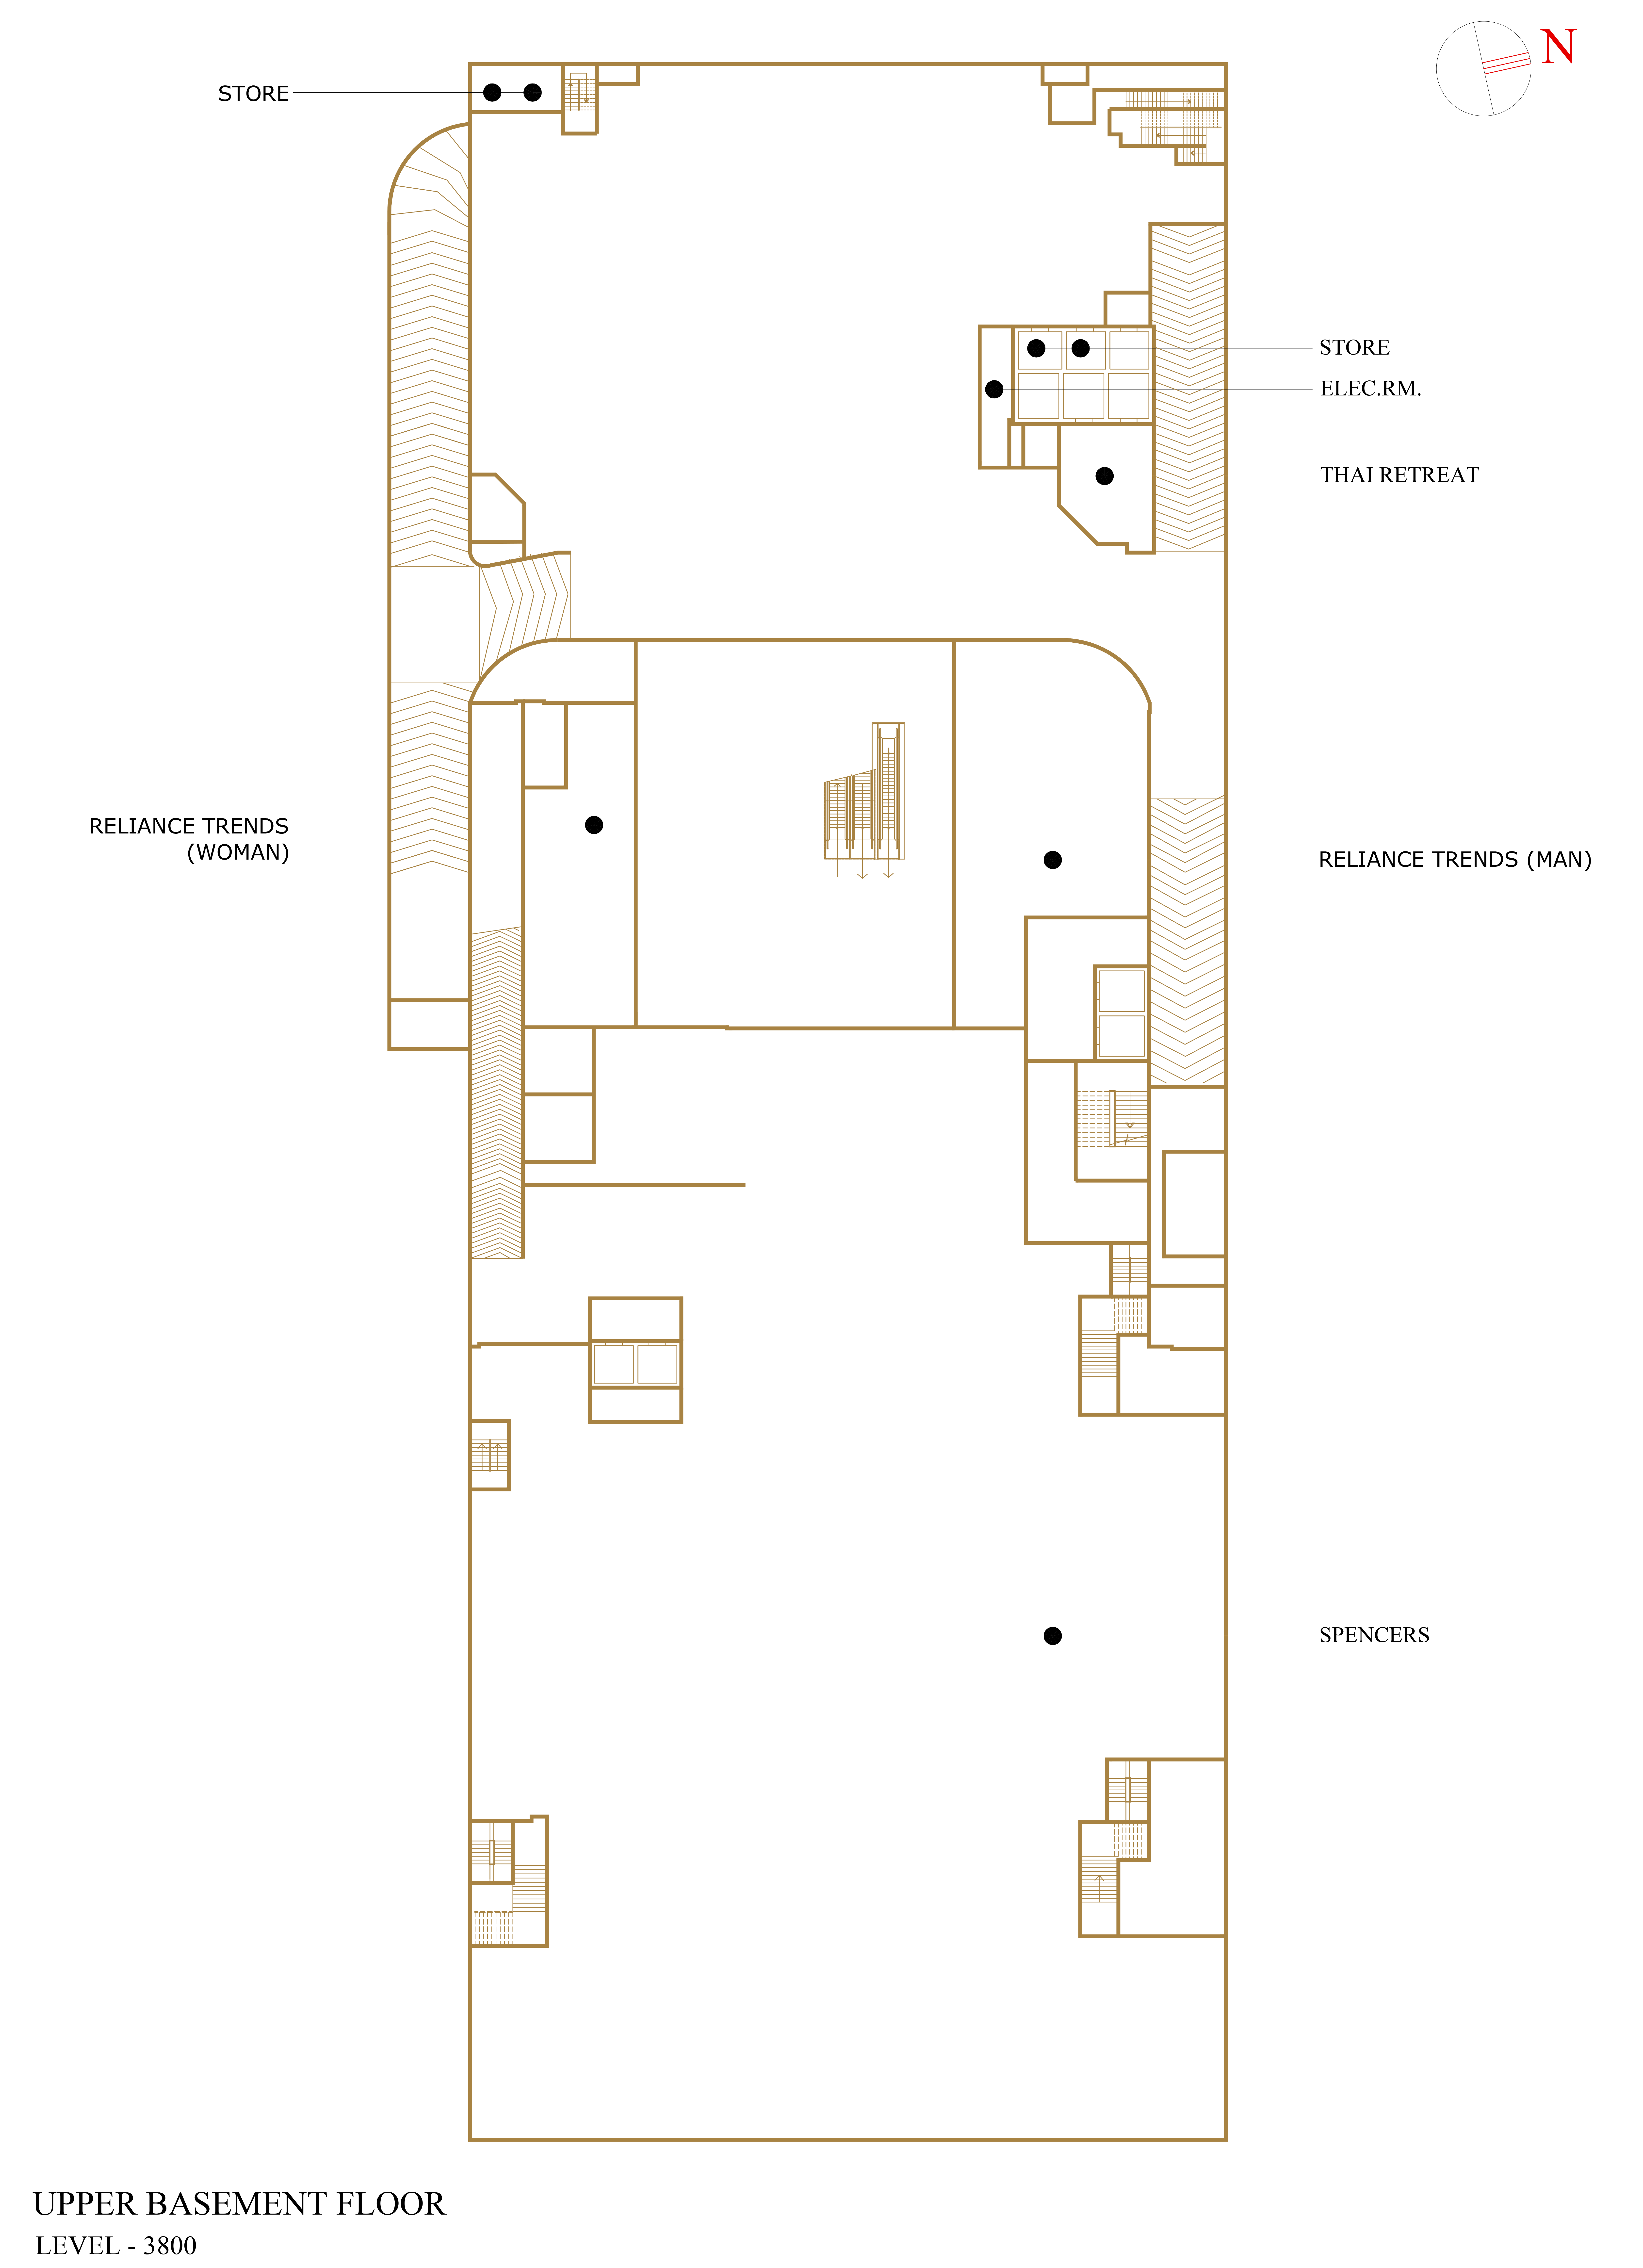 Upper Basement Floor